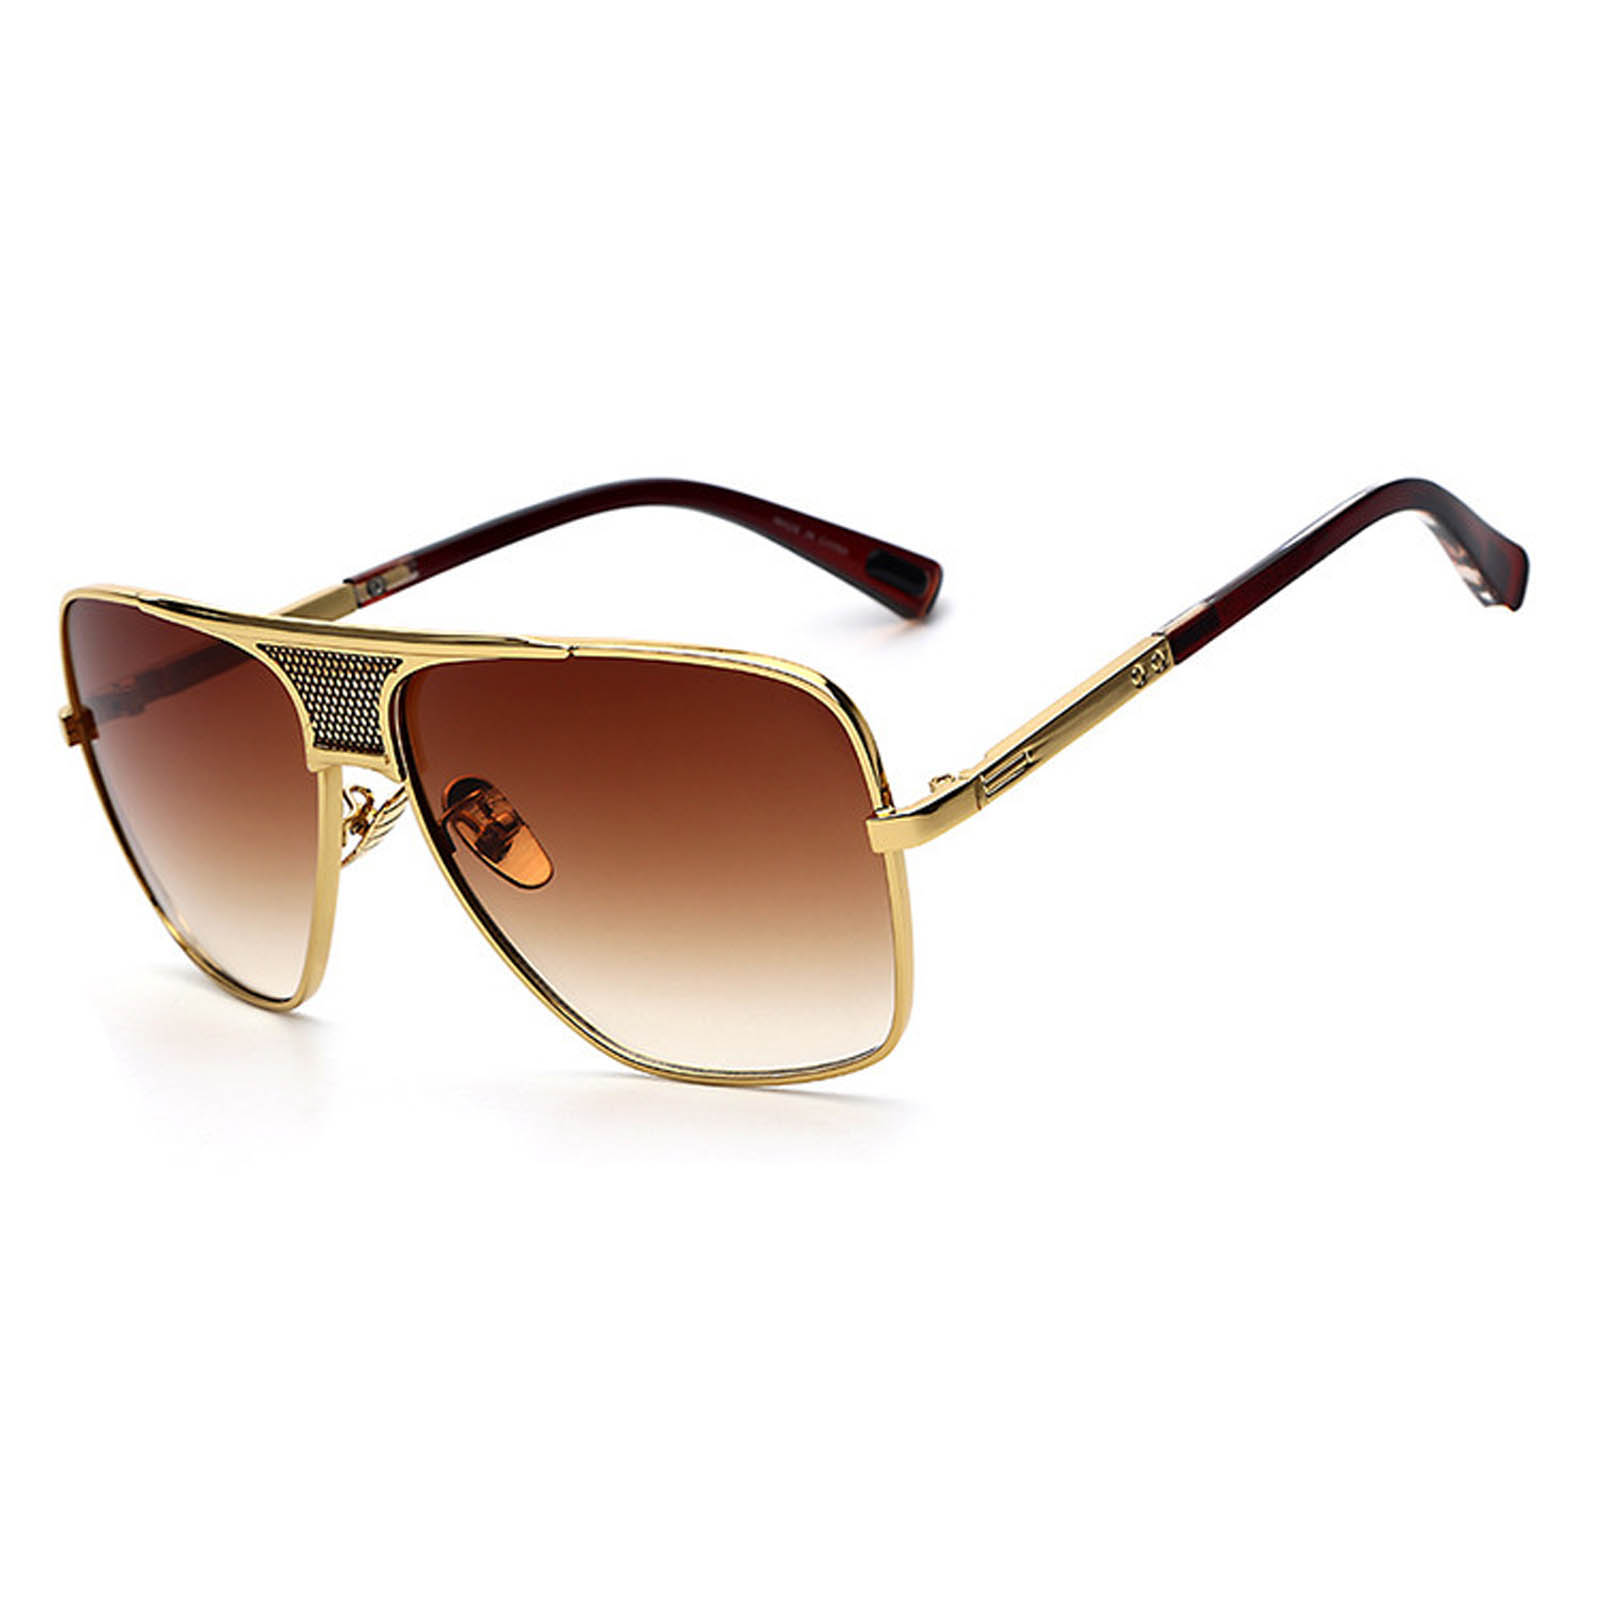 OWL ® 013 C3 Square Eyewear Sunglasses Women’s Men’s Metal Gold Frame ...